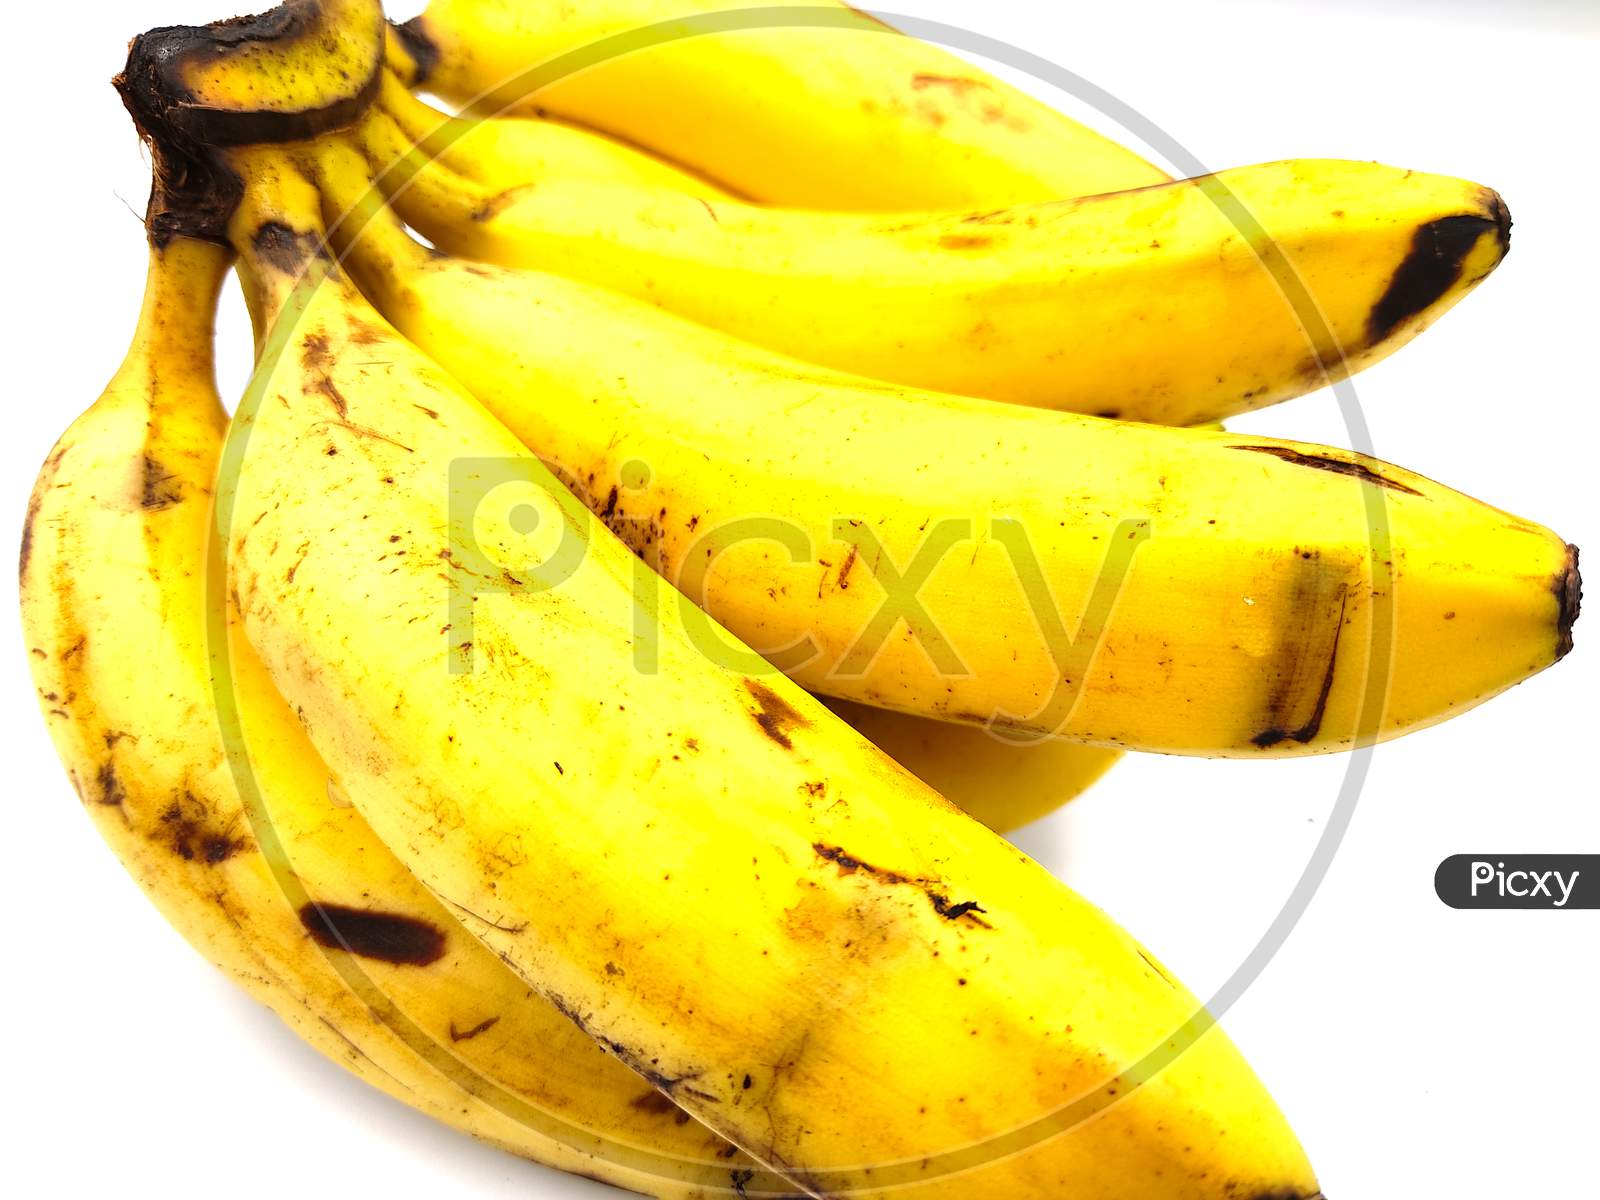 fresh bananas' isolated on white background